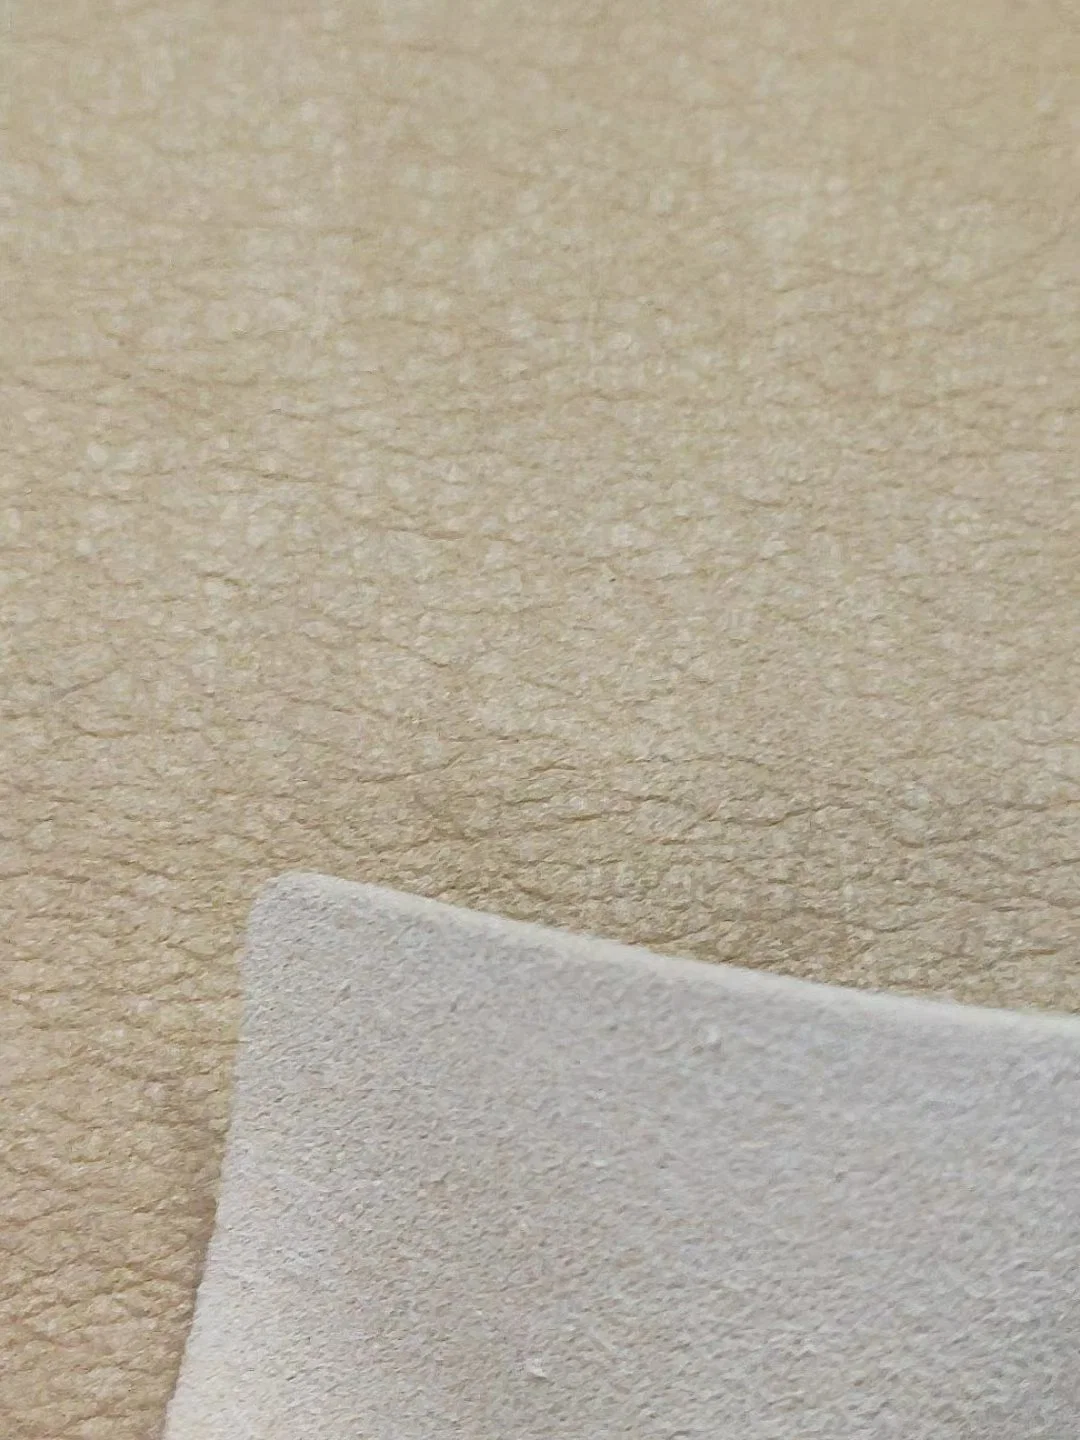 Sostenible de tela de microfibra, tejido sintético forro de microfibra de zapato de cuero